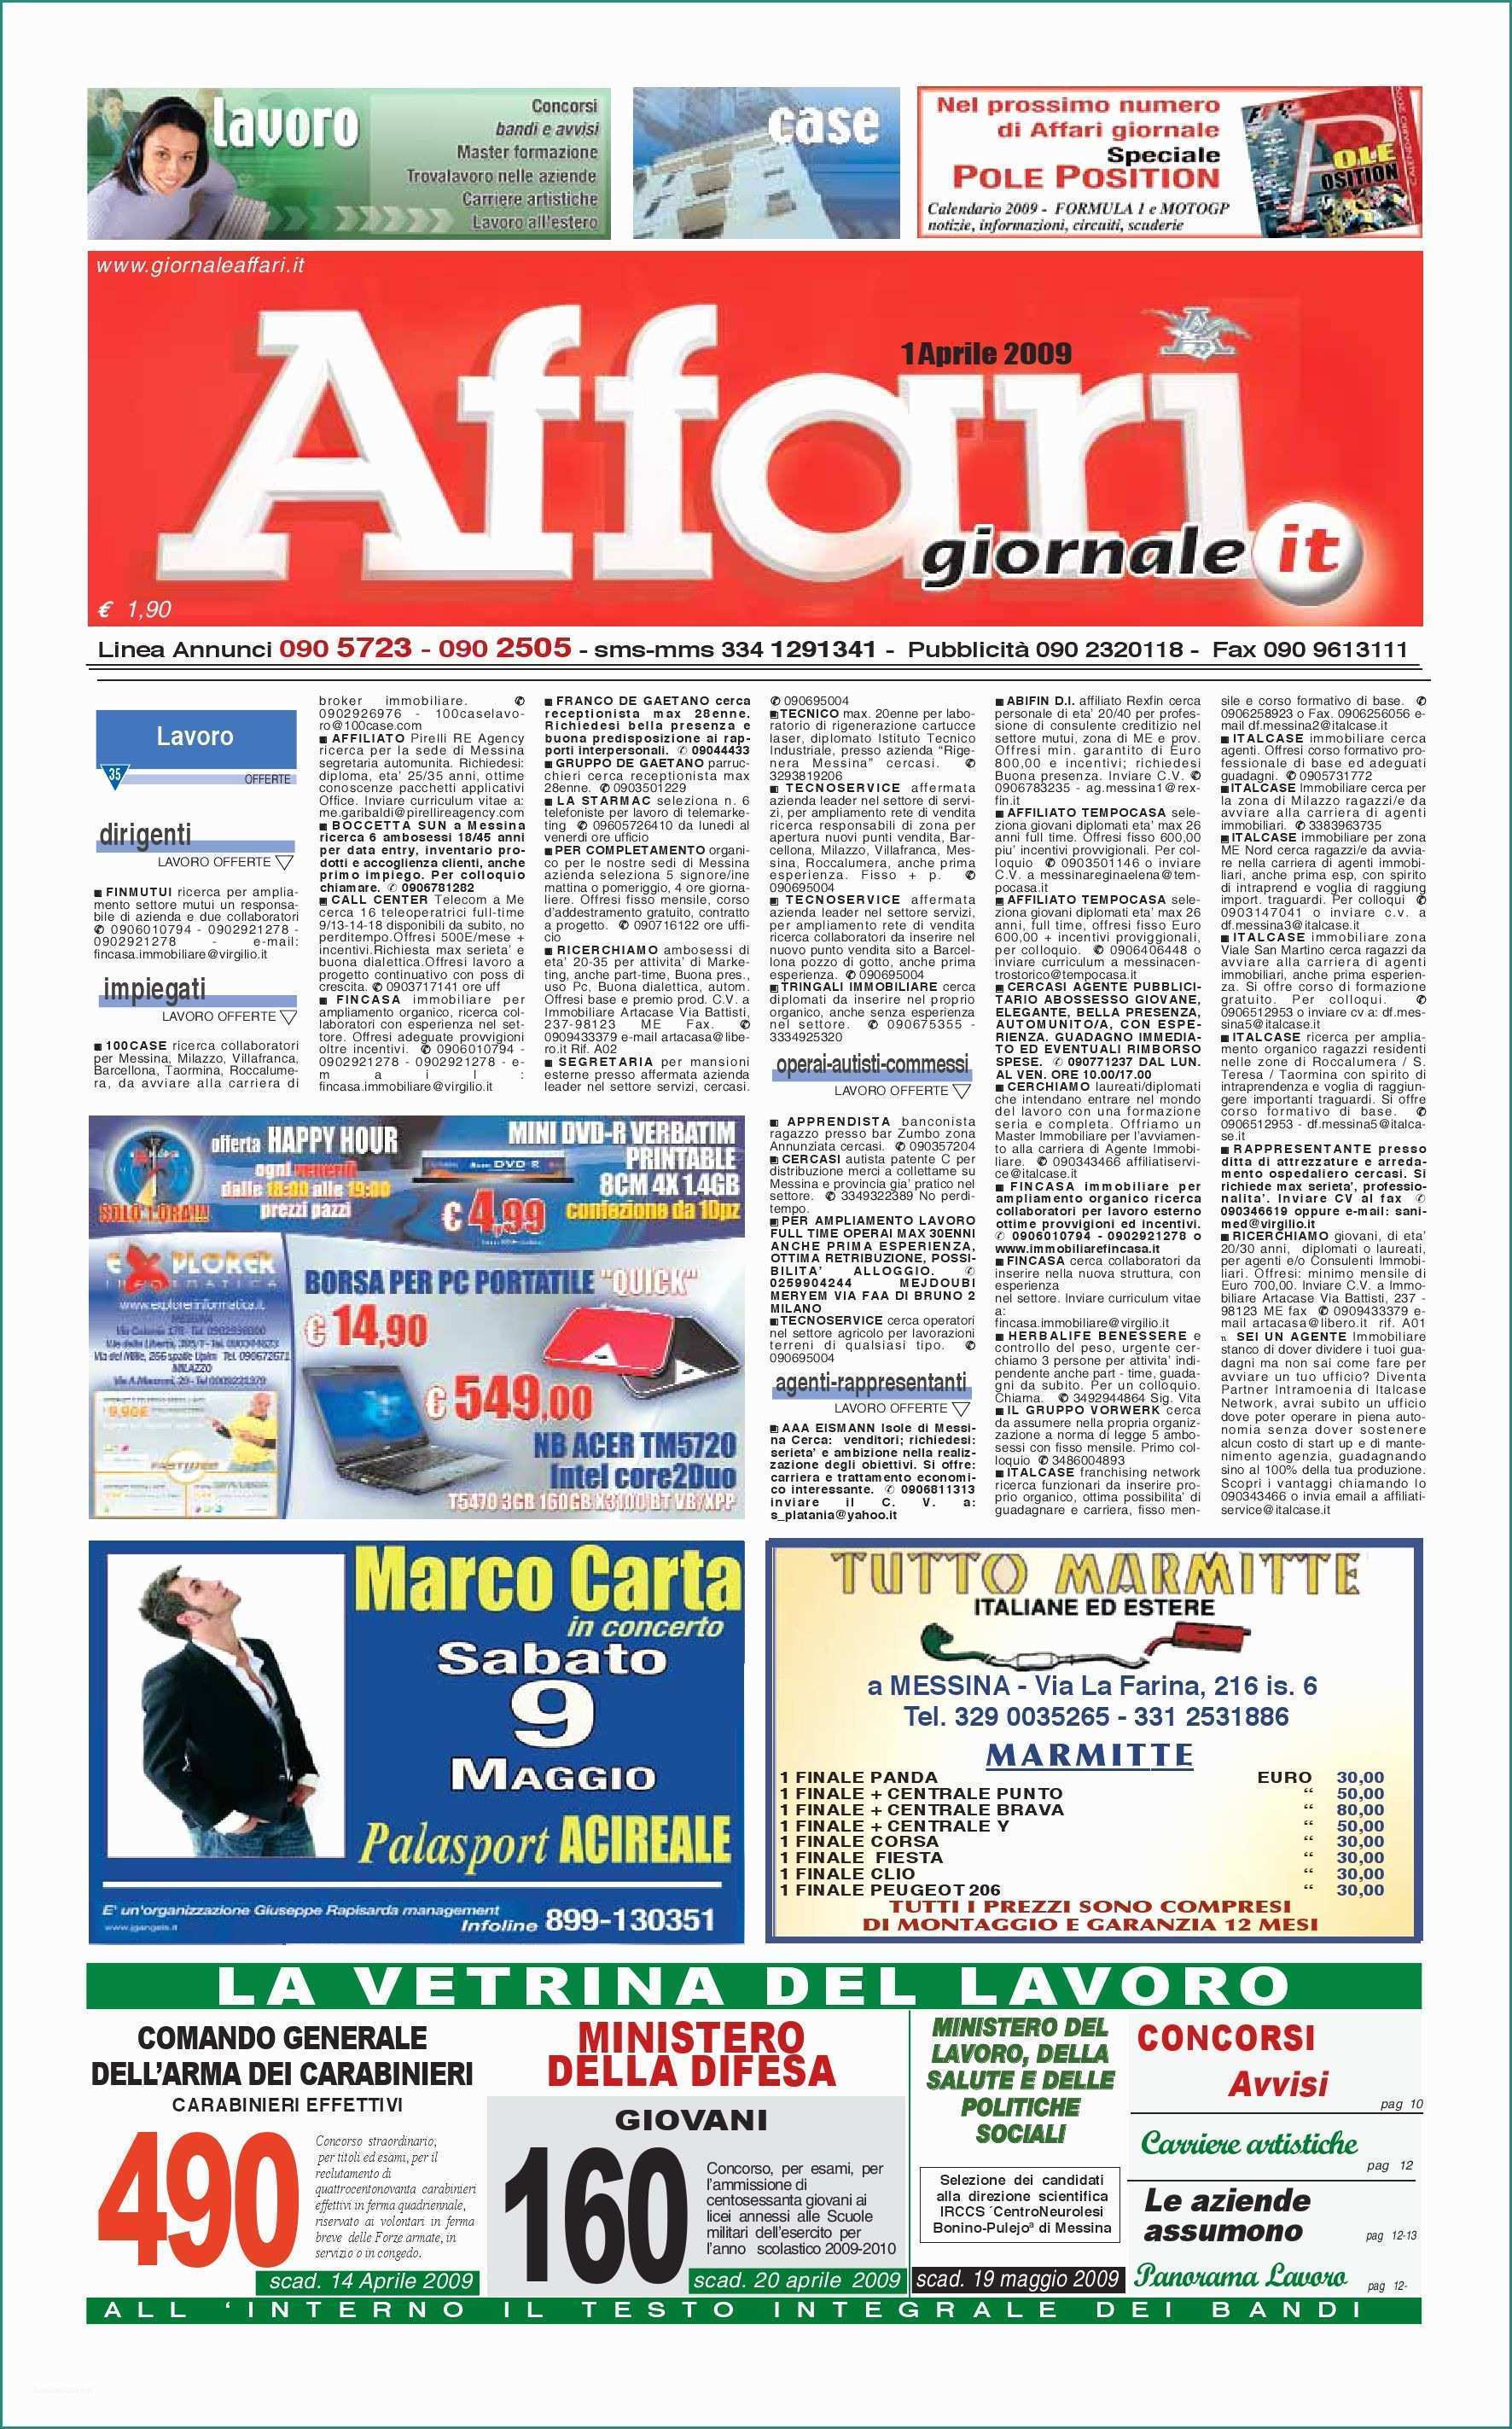 Materasso Antidecubito Ad Acqua E Giornale Affari Mercoledi 1 Aprile 2009 by Editoriale Affari Srl issuu